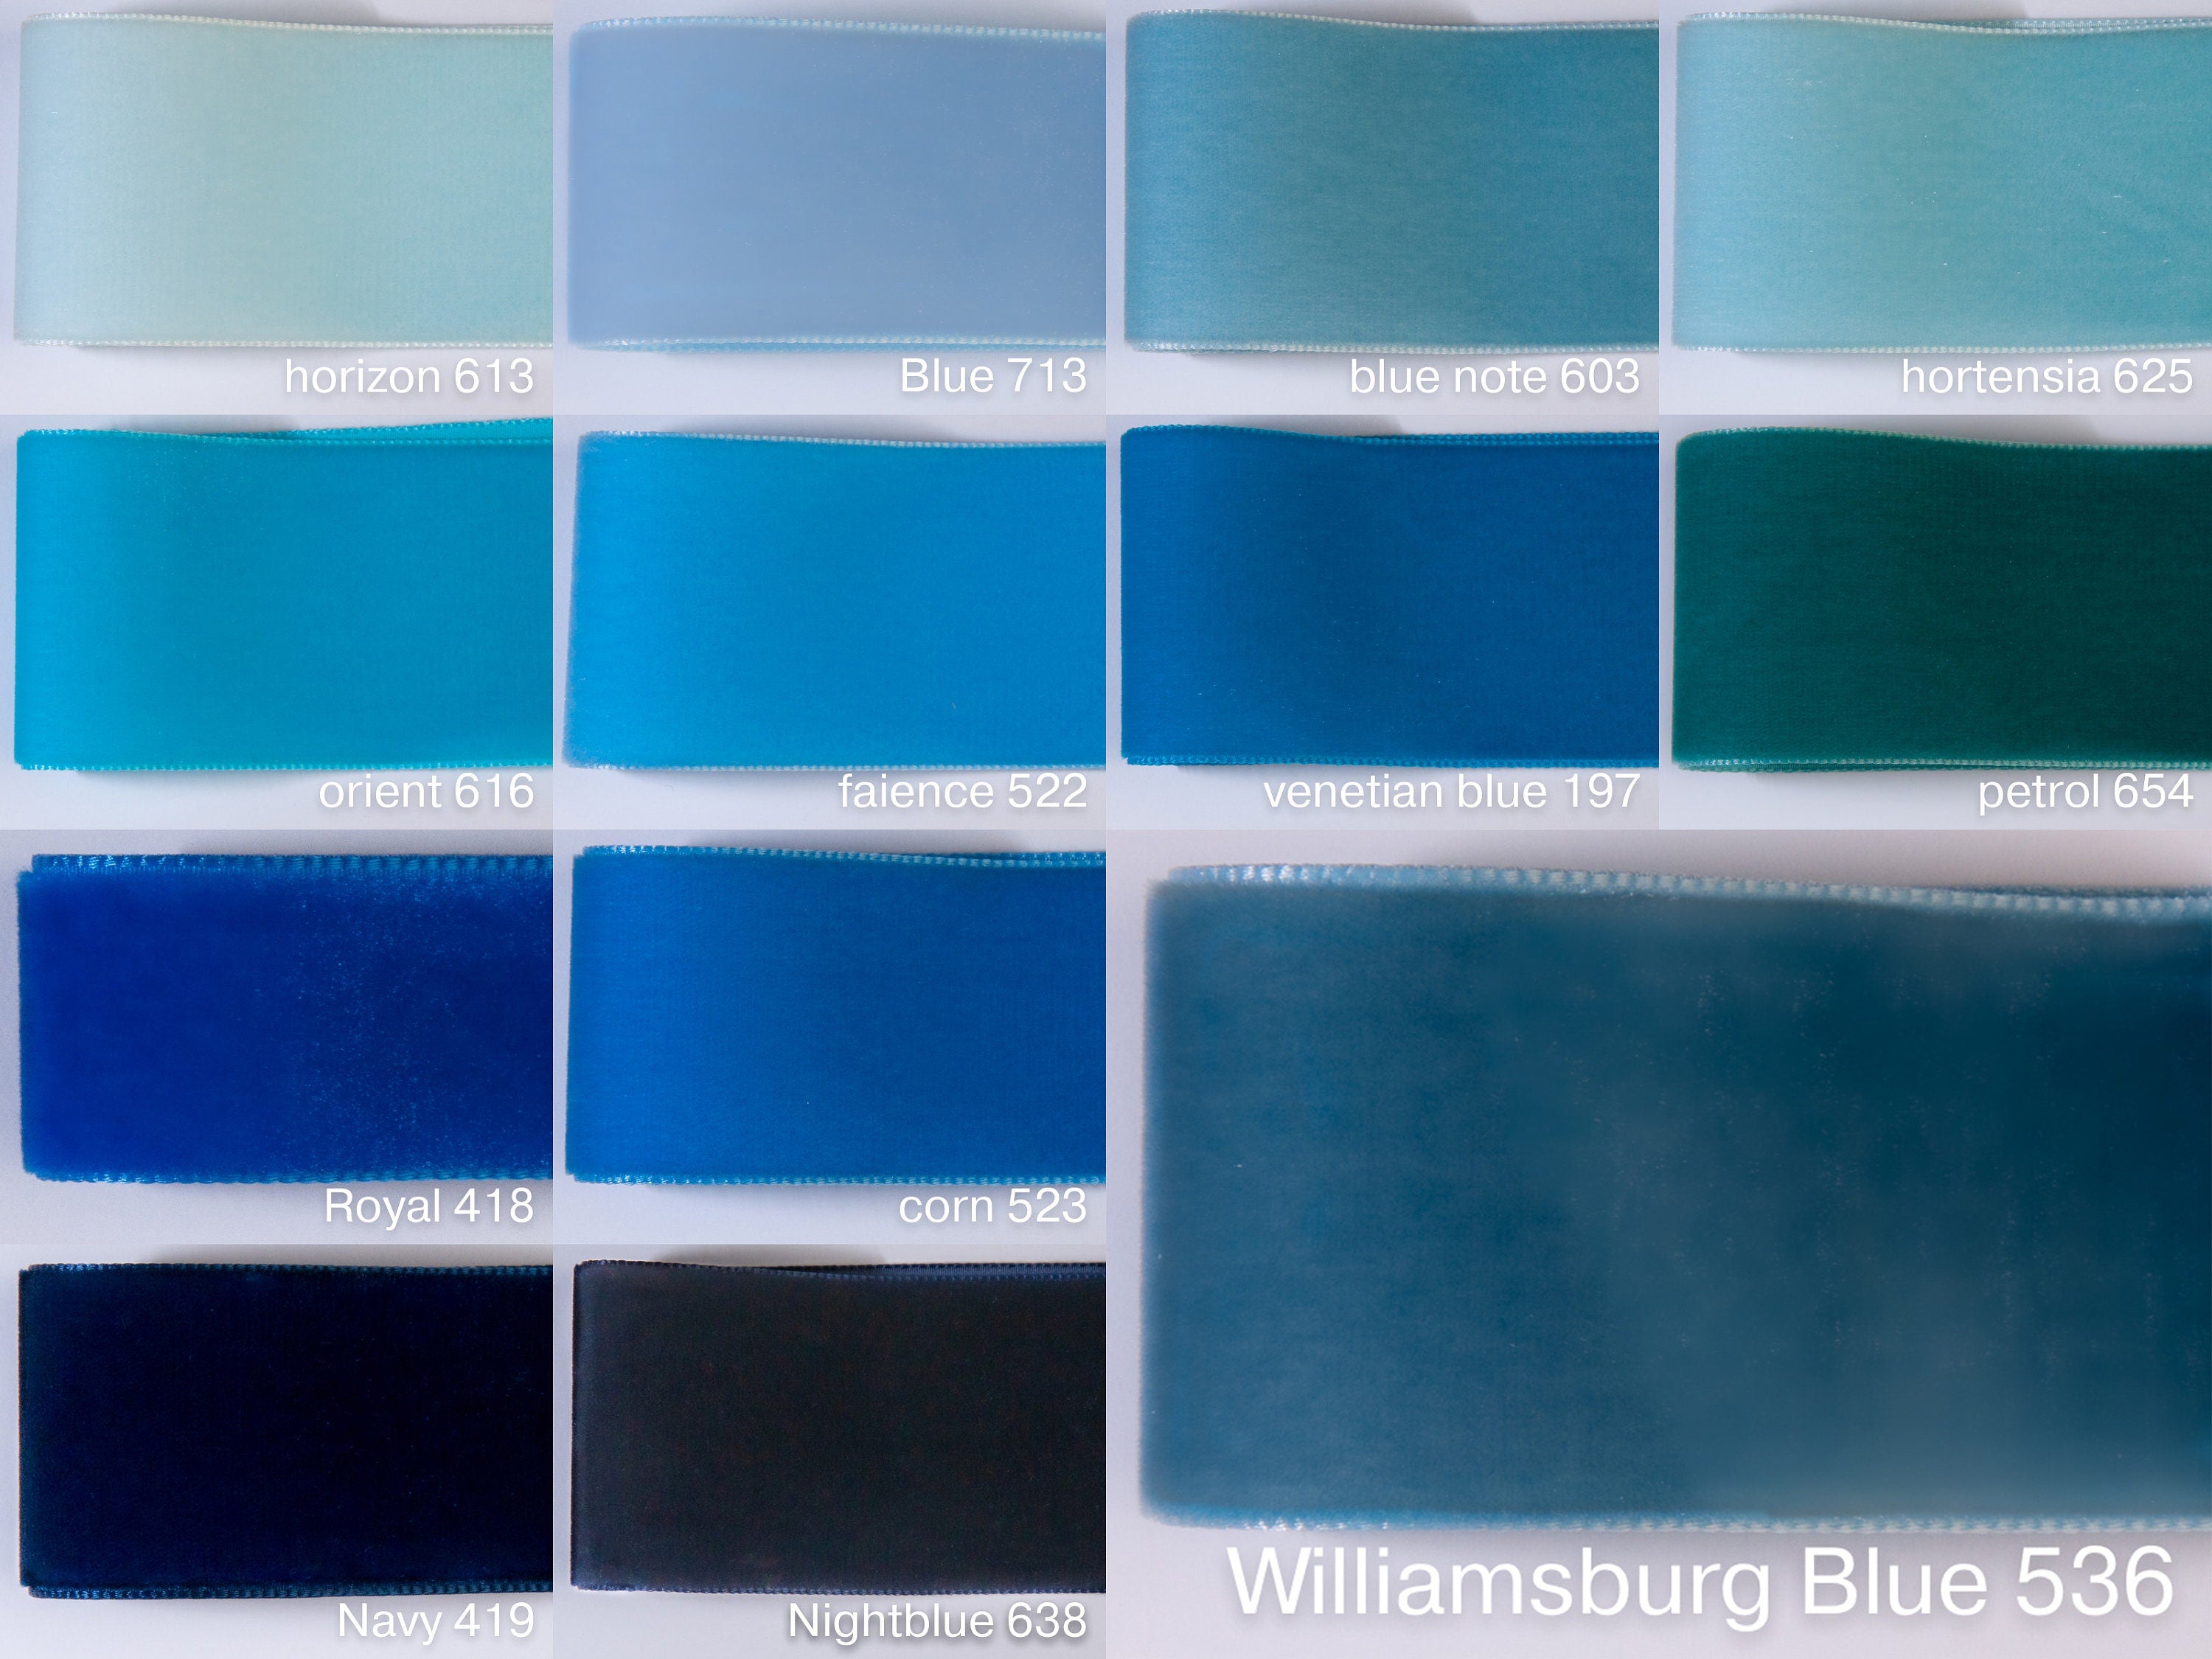 Blauer Samtgürtel mit perfekter Schleife in hellblau, dunkelblau, staubblau und 72 Farben, 3 Breiten. Schweizer Qualität für Kleider, Dirndl